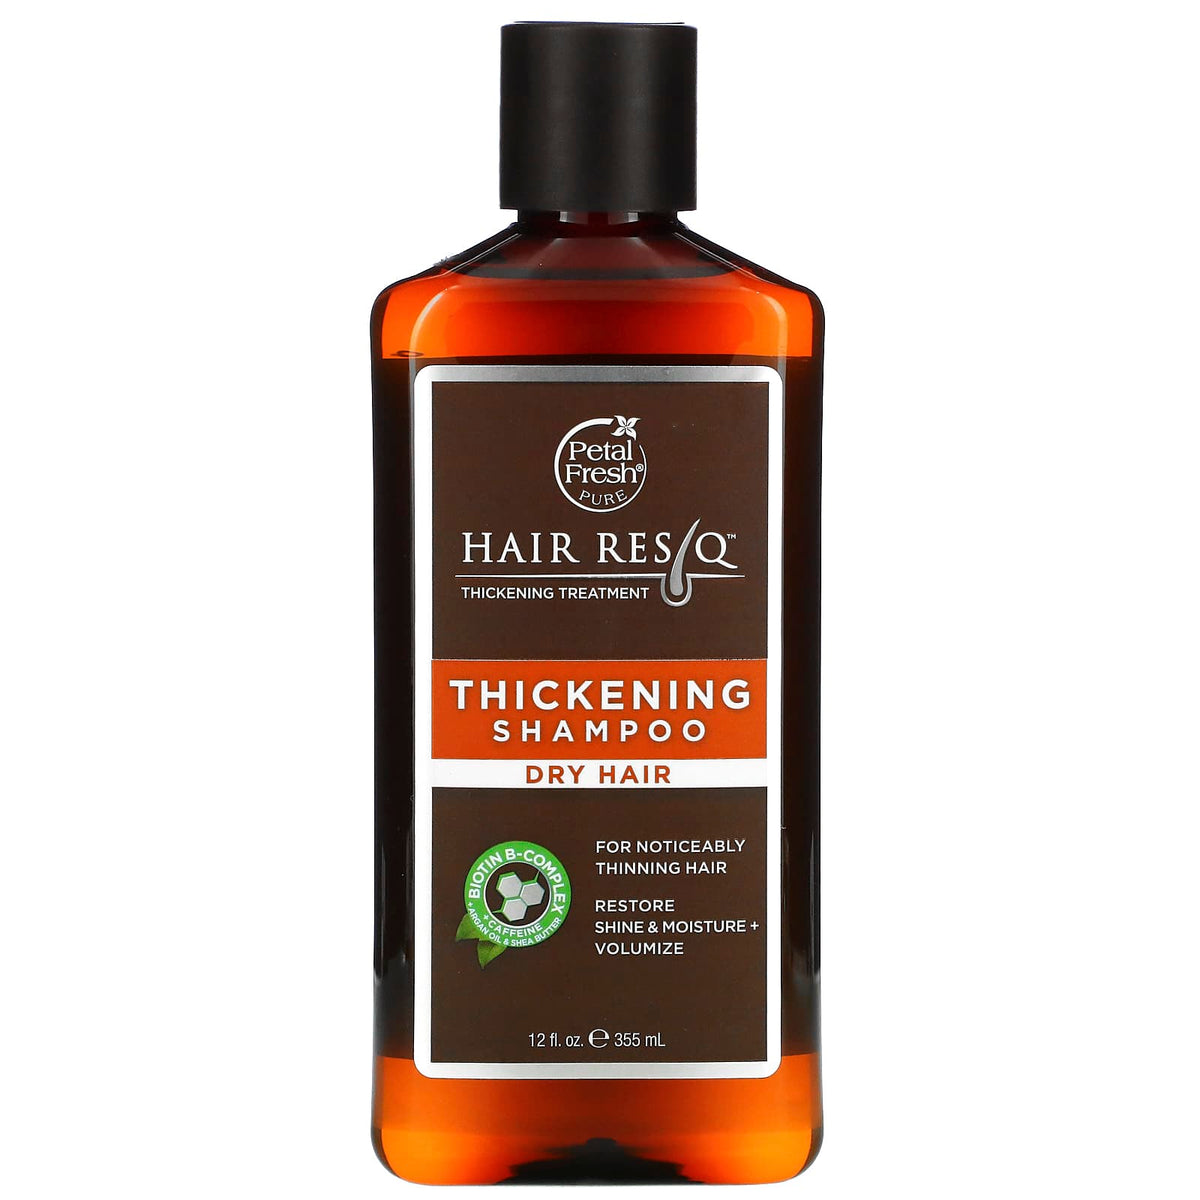 Petal Fresh Hair Resq Thickening Shampoo Dry Hair (355 ml) Petal Fresh